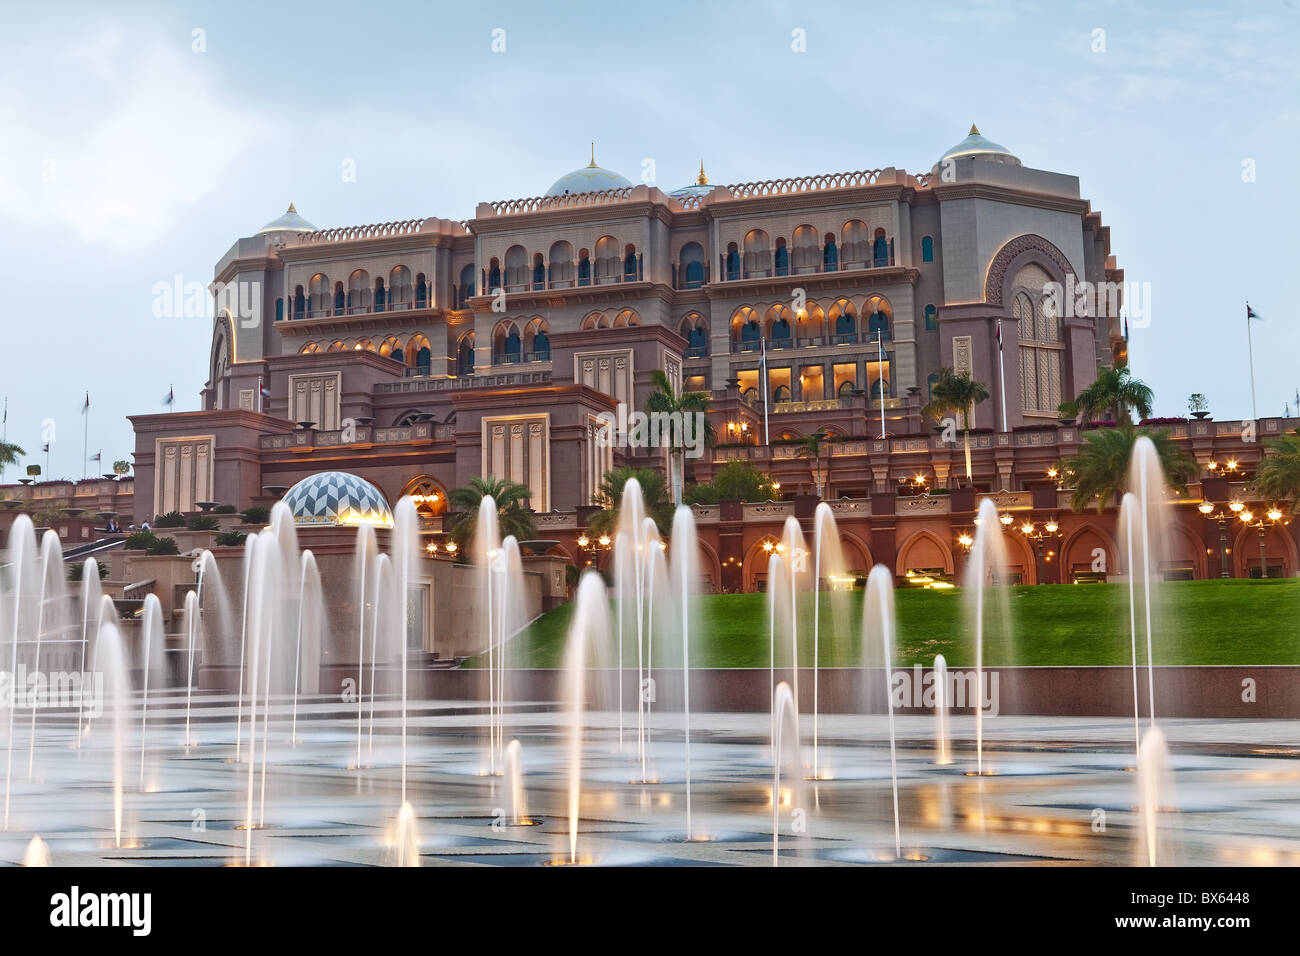 Les fontaines d'eau en face de l'hôtel Emirates Palace, Abu Dhabi, Émirats arabes unis, Moyen Orient Banque D'Images